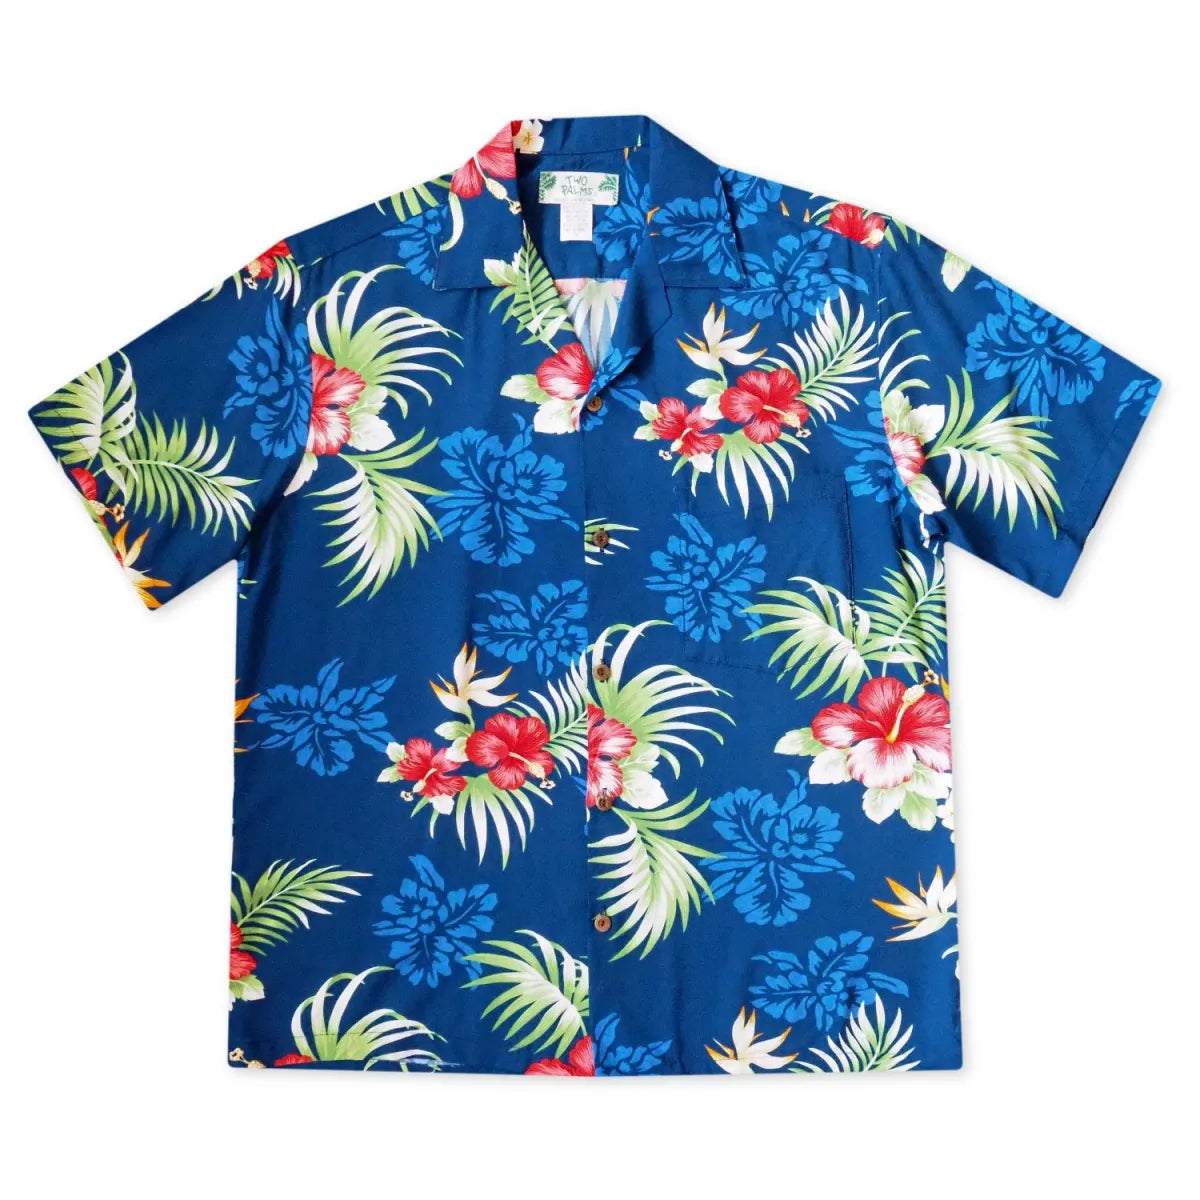 Passion navy hawaiian rayon shirt